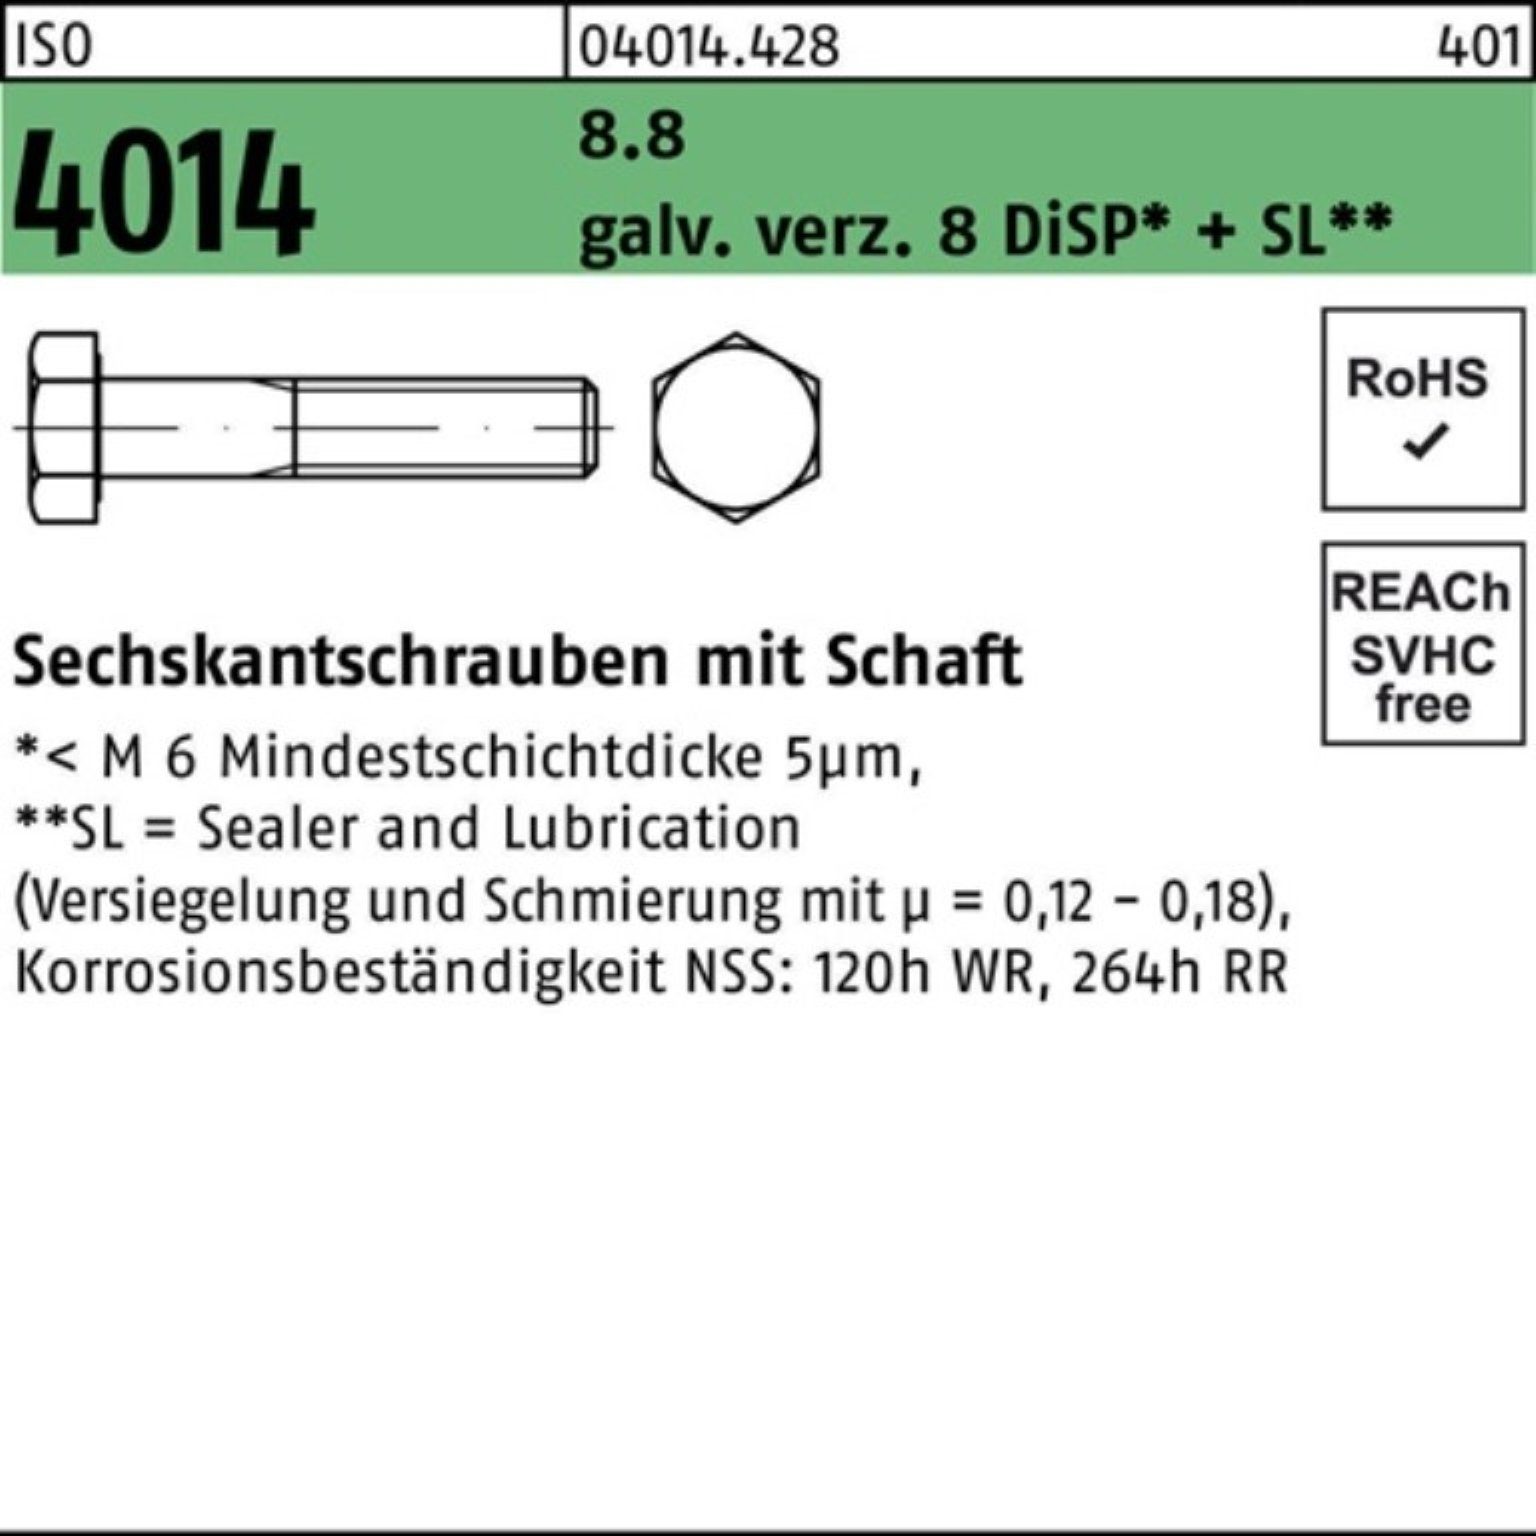 Sechskantschraube 8.8 Bufab Schaft ISO 8 M27x180 4014 Pack Sechskantschraube galv.verz. 100er